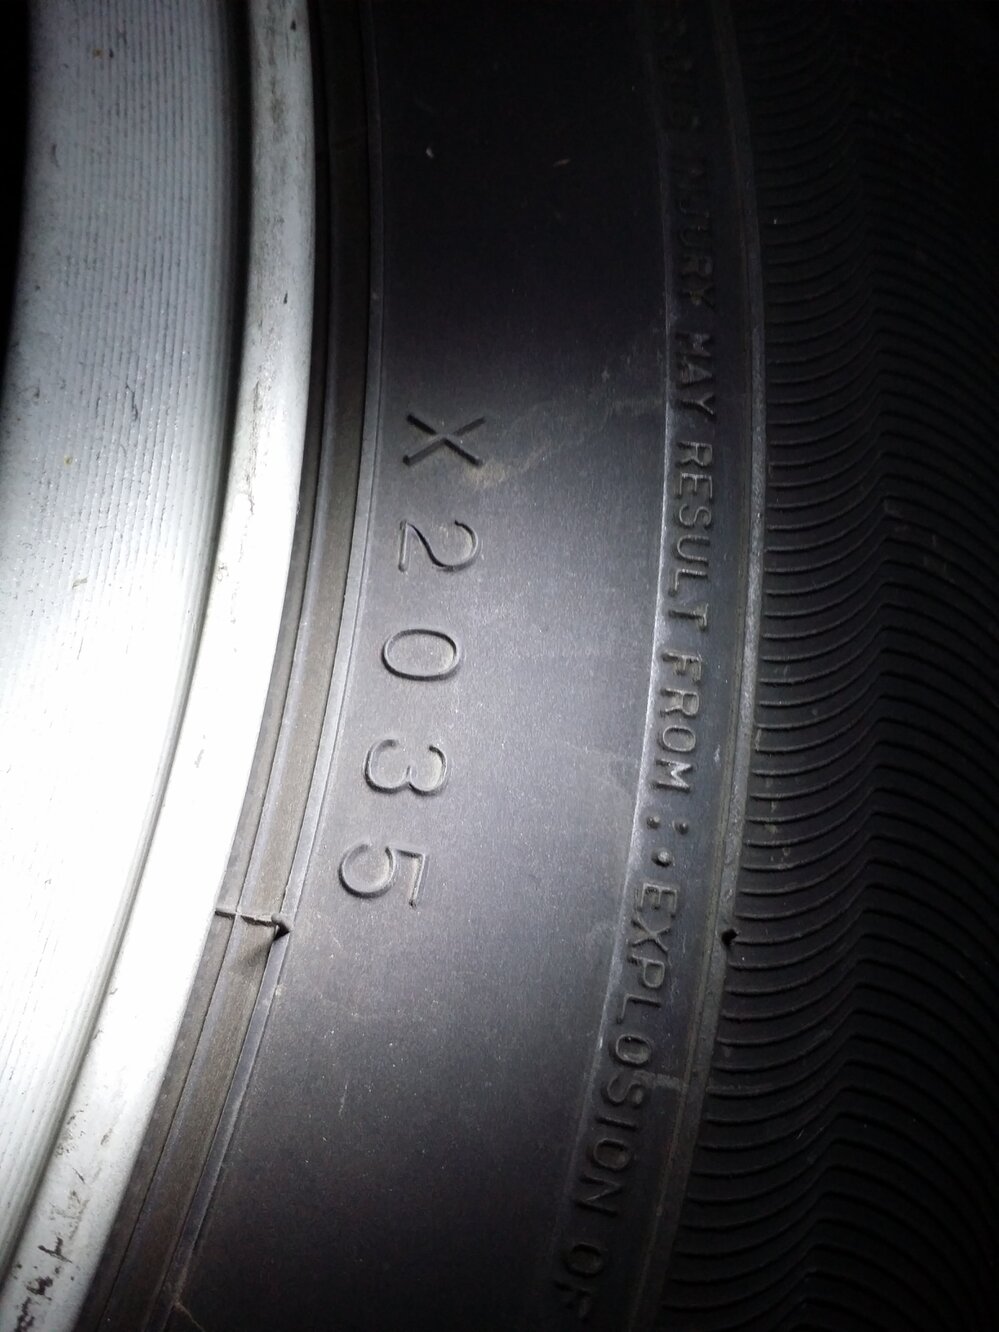 タイヤの製造年について ダンロップなのですが X35 と４桁の数字が Yahoo 知恵袋